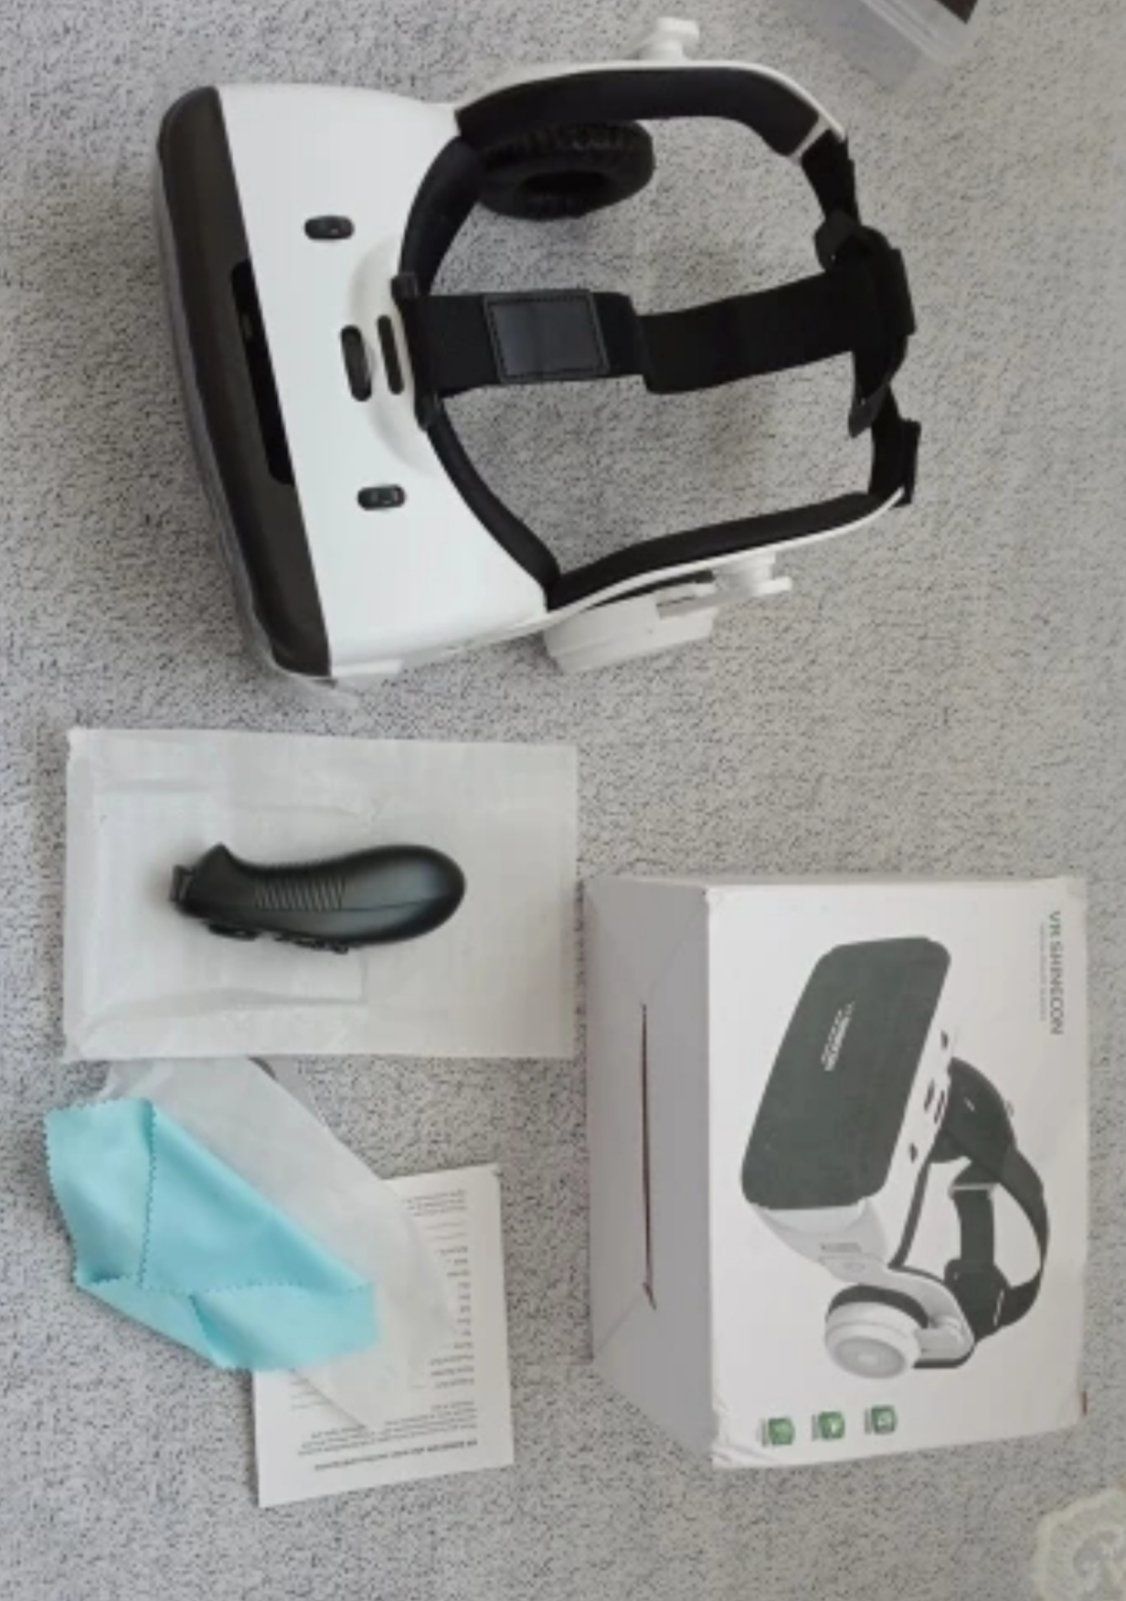 VR очки виртуальной реальности